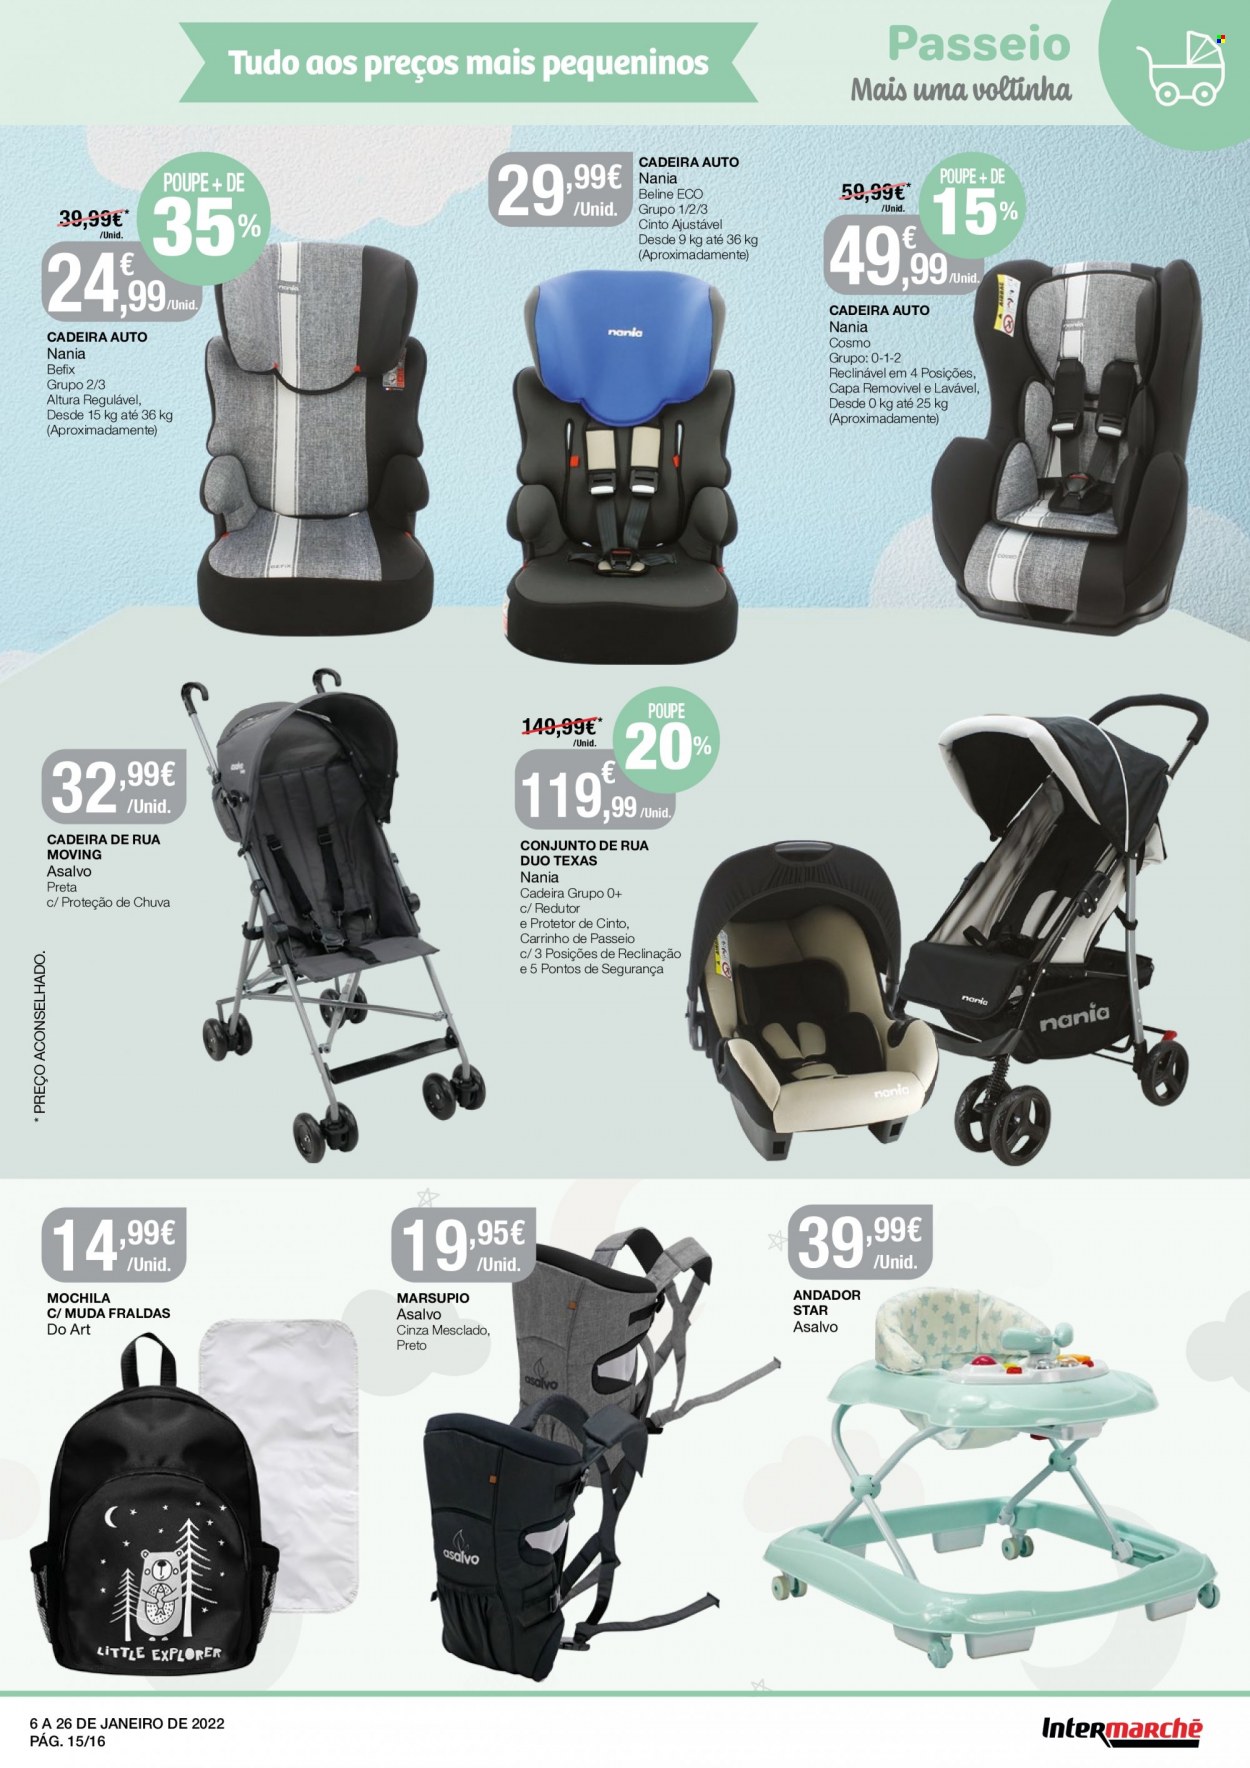 thumbnail - Folheto Intermarché - 6.1.2022 - 26.1.2022 - Produtos em promoção - fraldas, mochila, cadeira, andador, carrinho de bebê, cadeira de auto. Página 15.